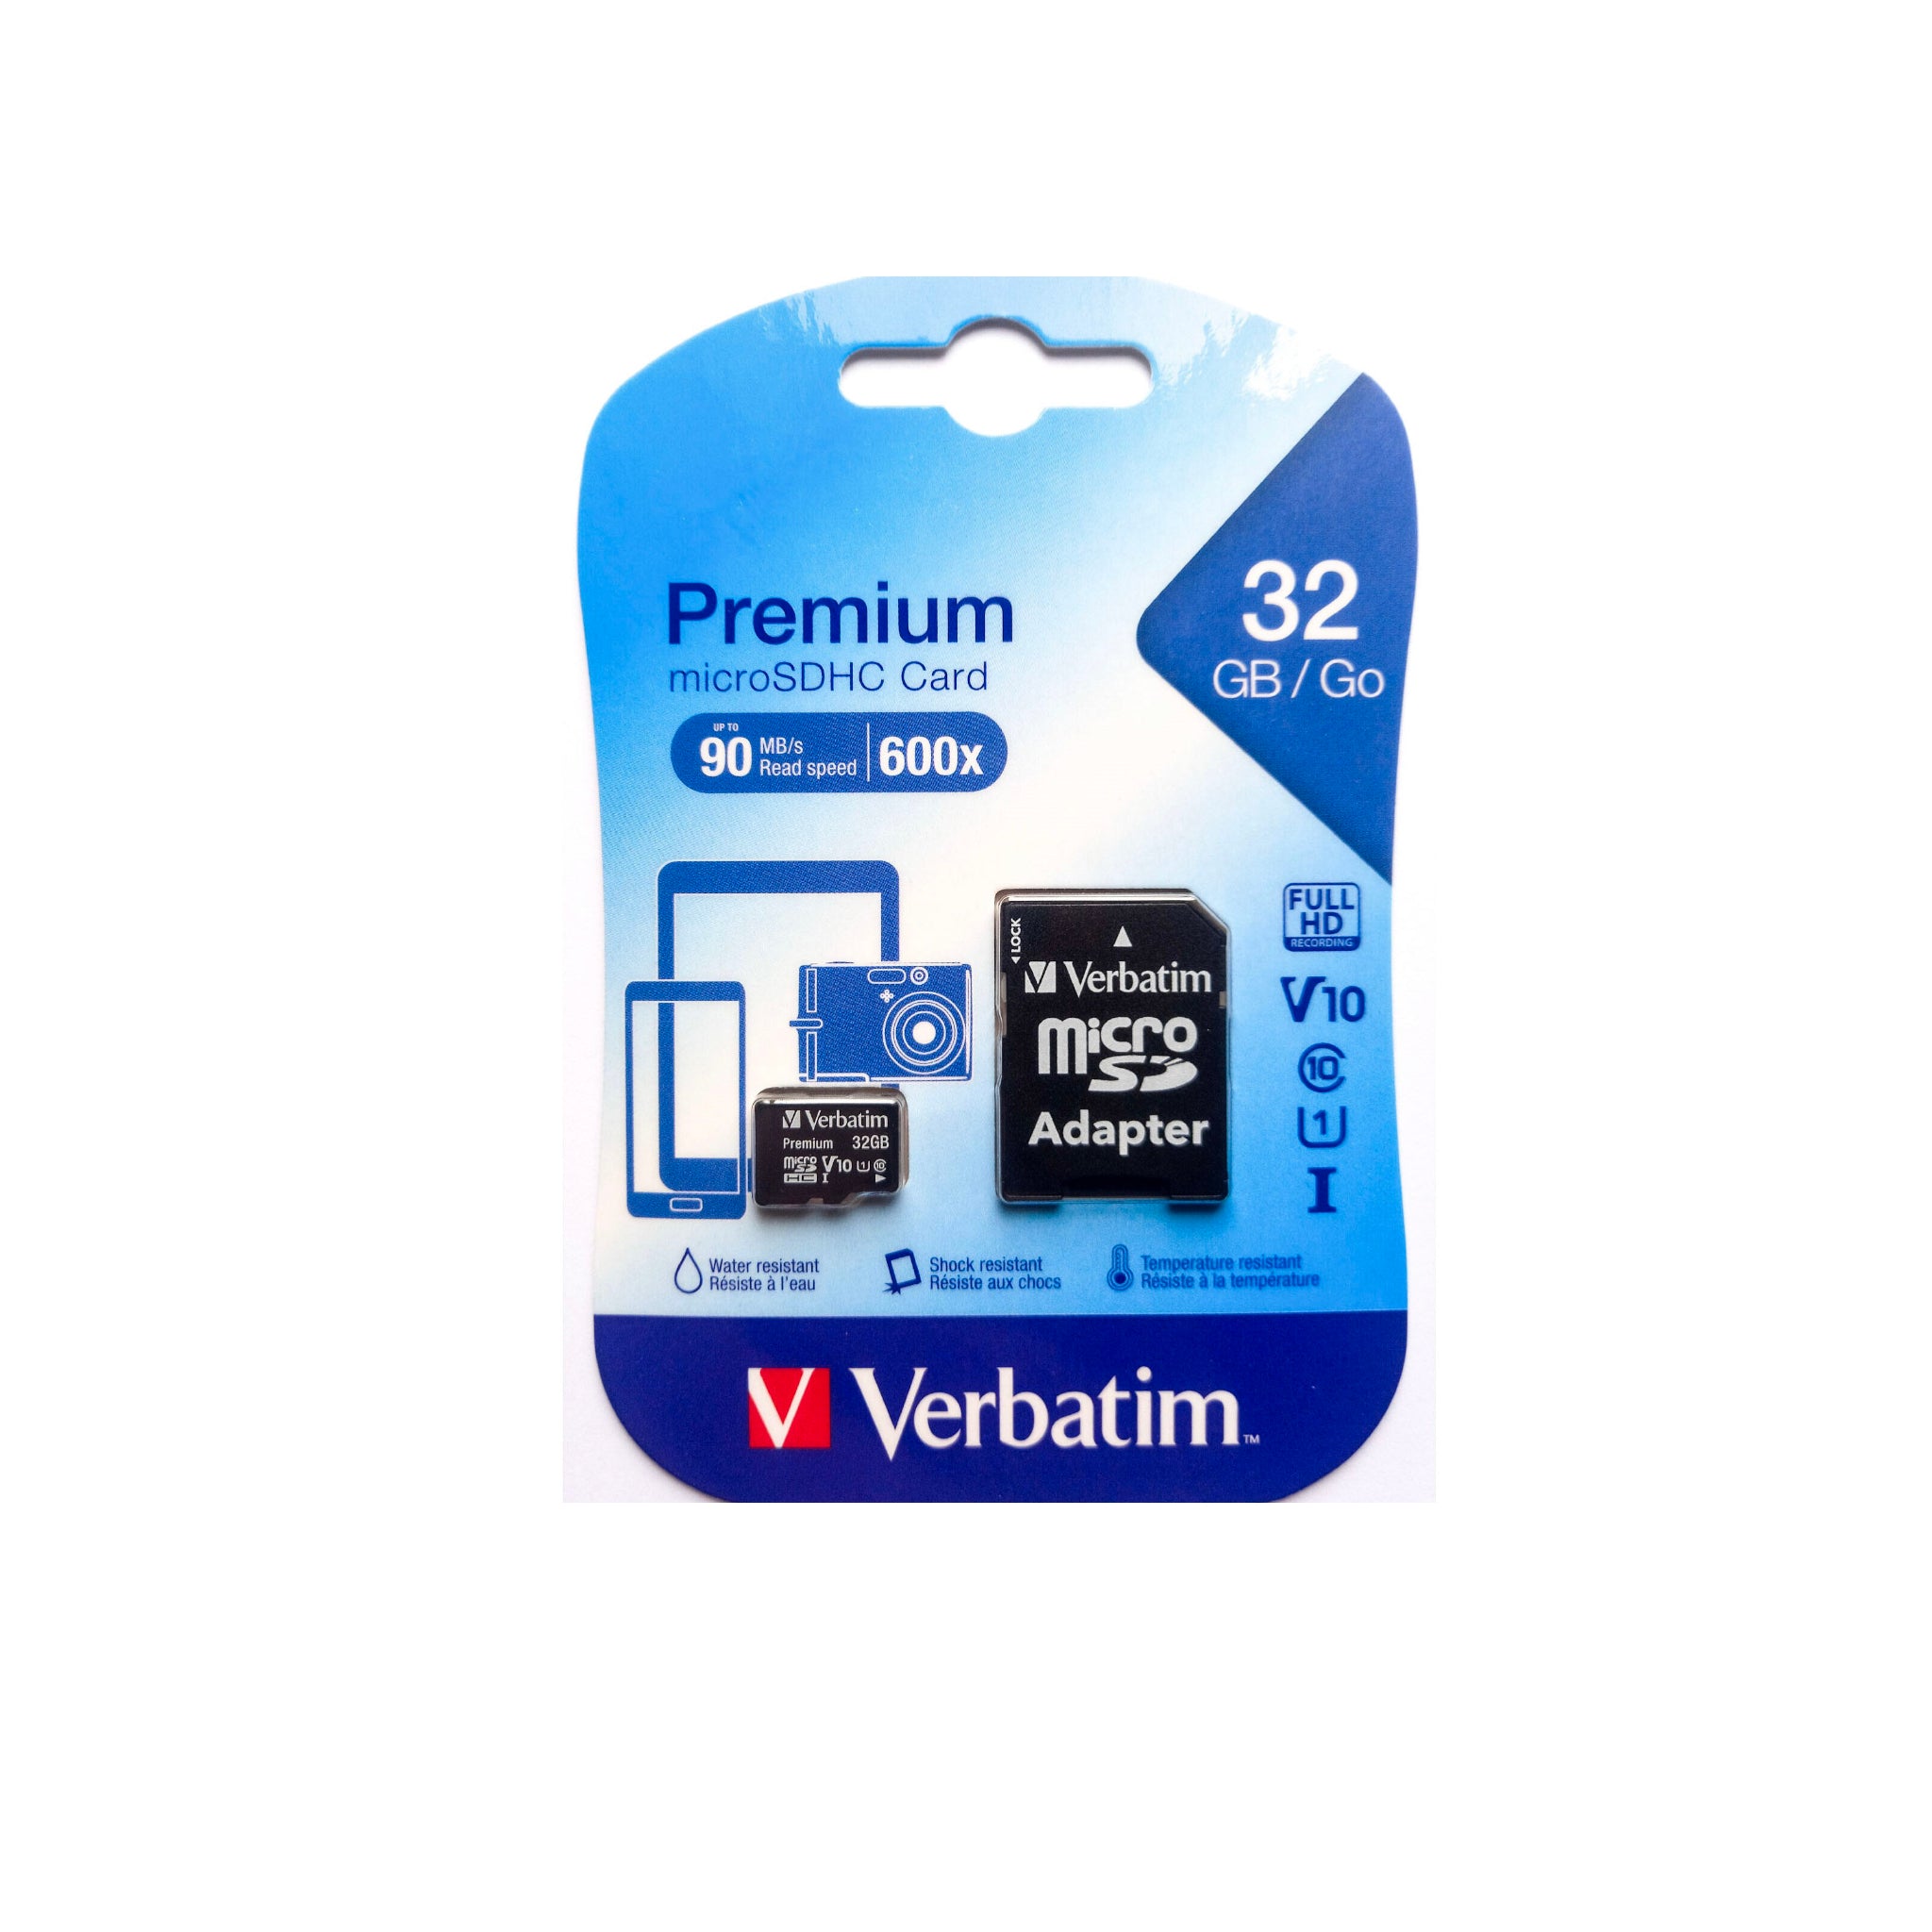 Verbatim 32 GB Micro SDHC Card Premium